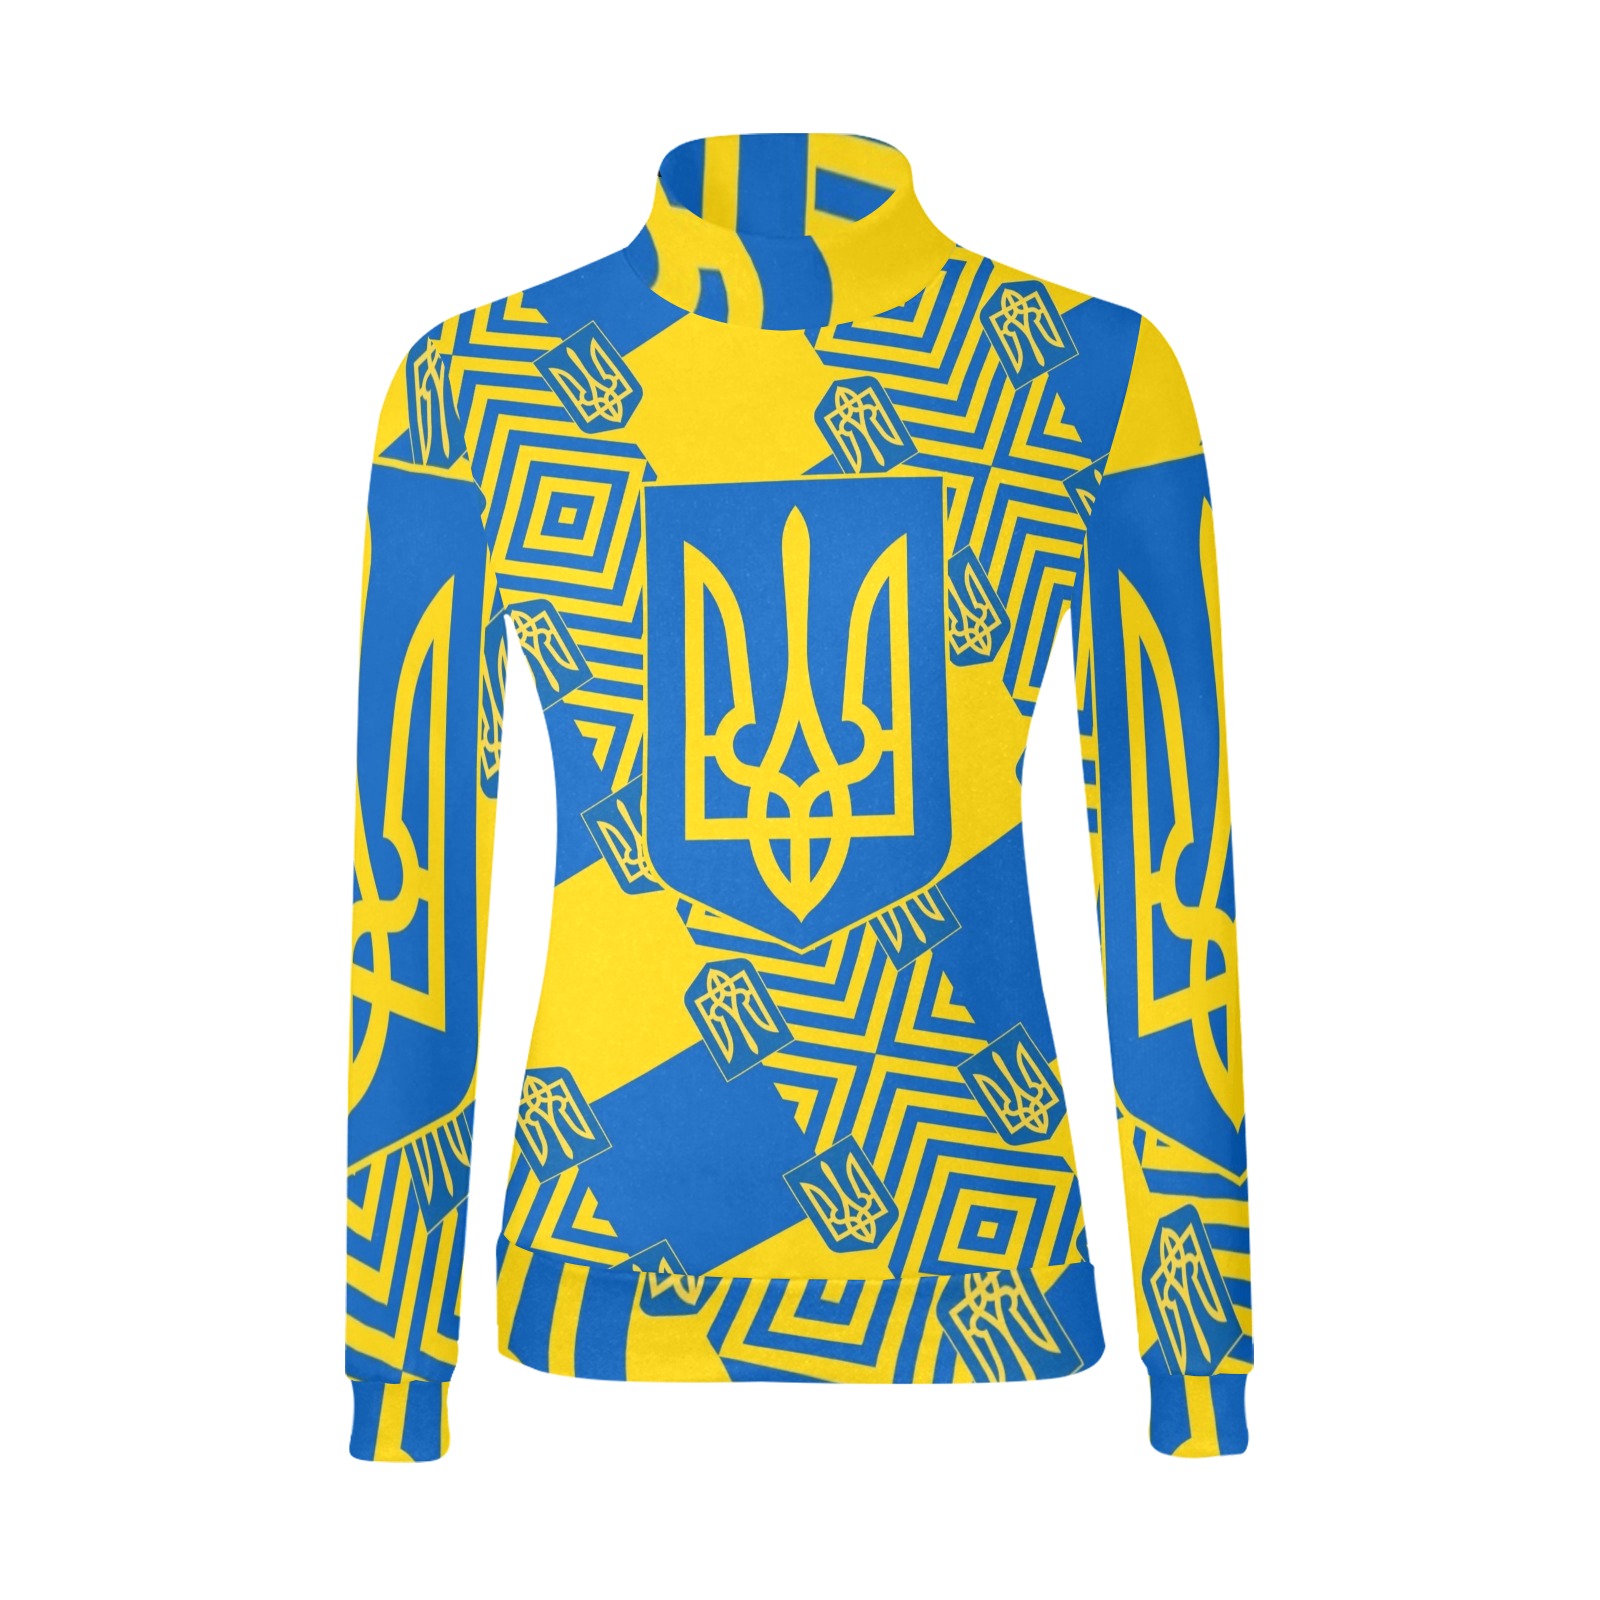 UKRAINE 2 Women's All Over Print Mock Neck Sweatshirt (Model H43)